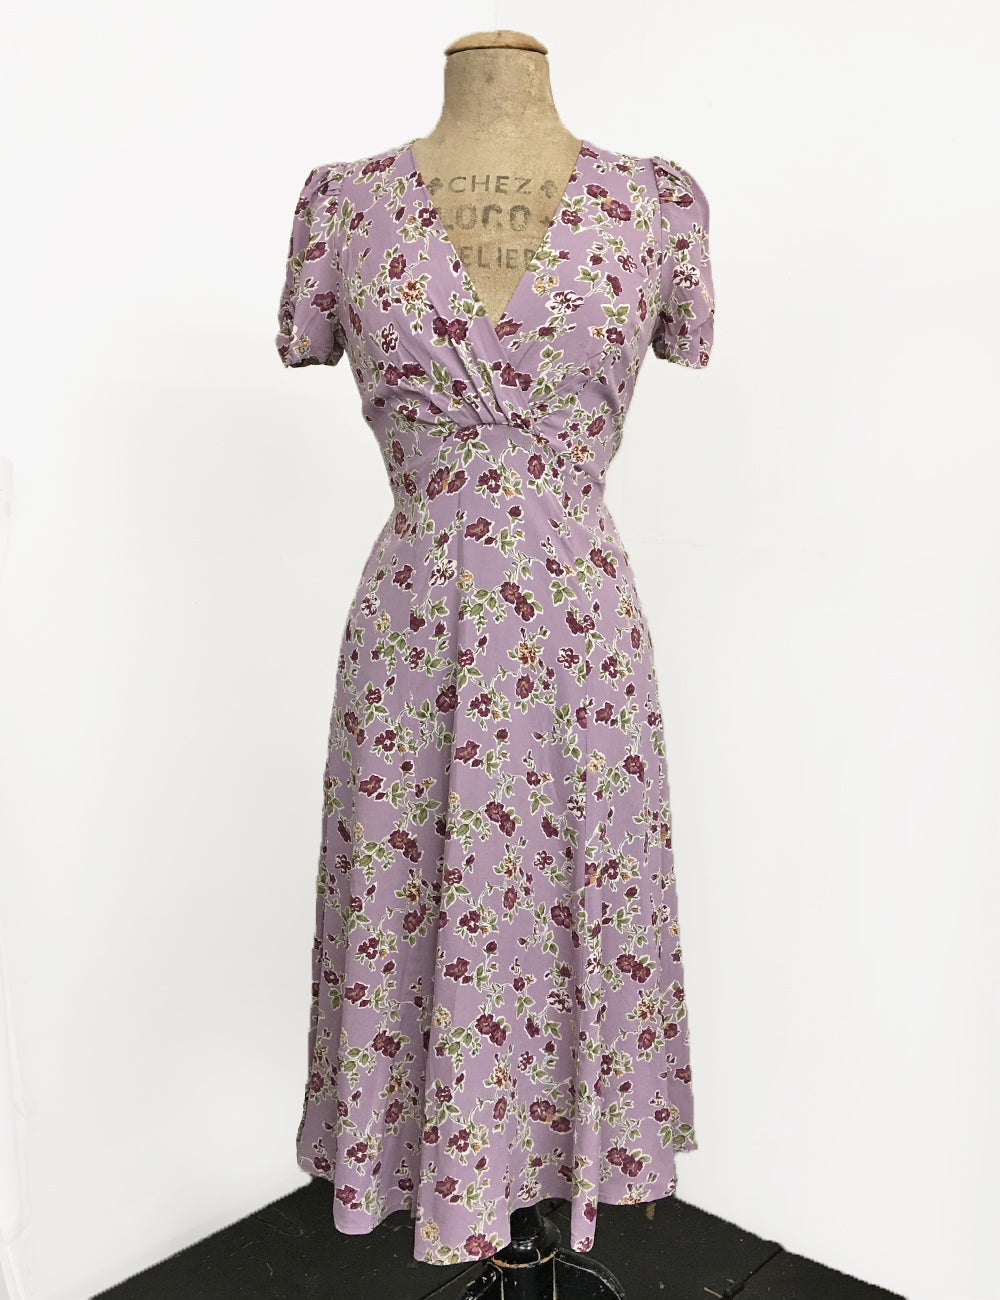 Lavender Floral Vintage Inspired Knee Length Rita Dress